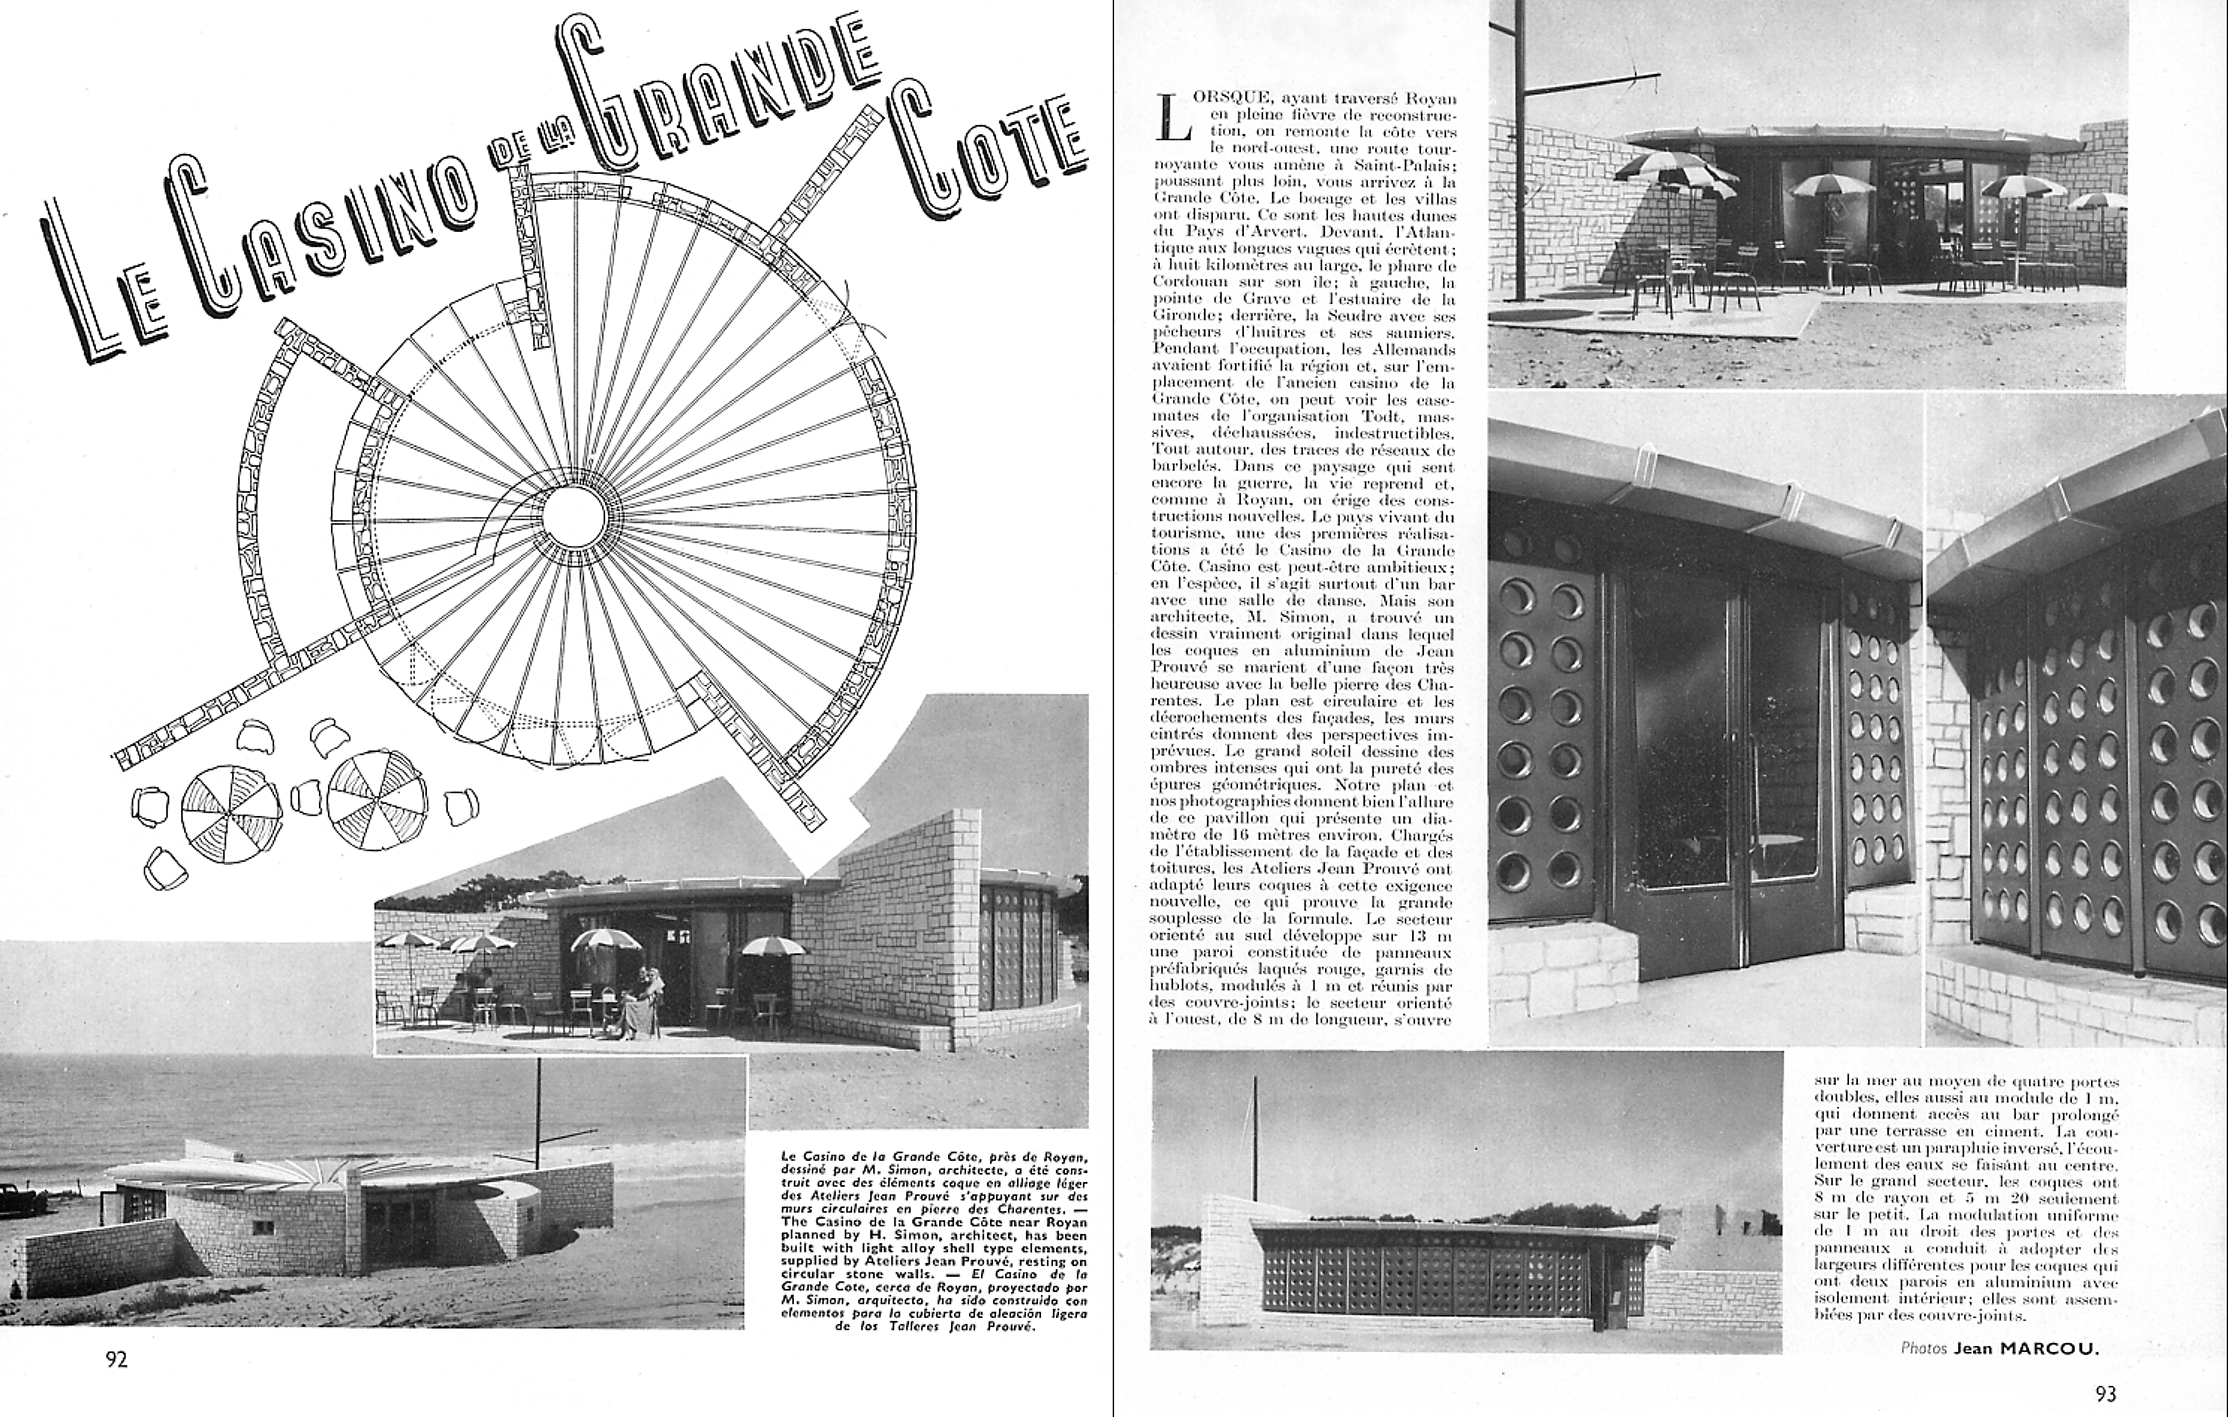 Article de presse, s.d. Casino de la Grande Côte, Royan (L. Simon, arch., 1951). Panneaux de façade conçus par Jean Prouvé.